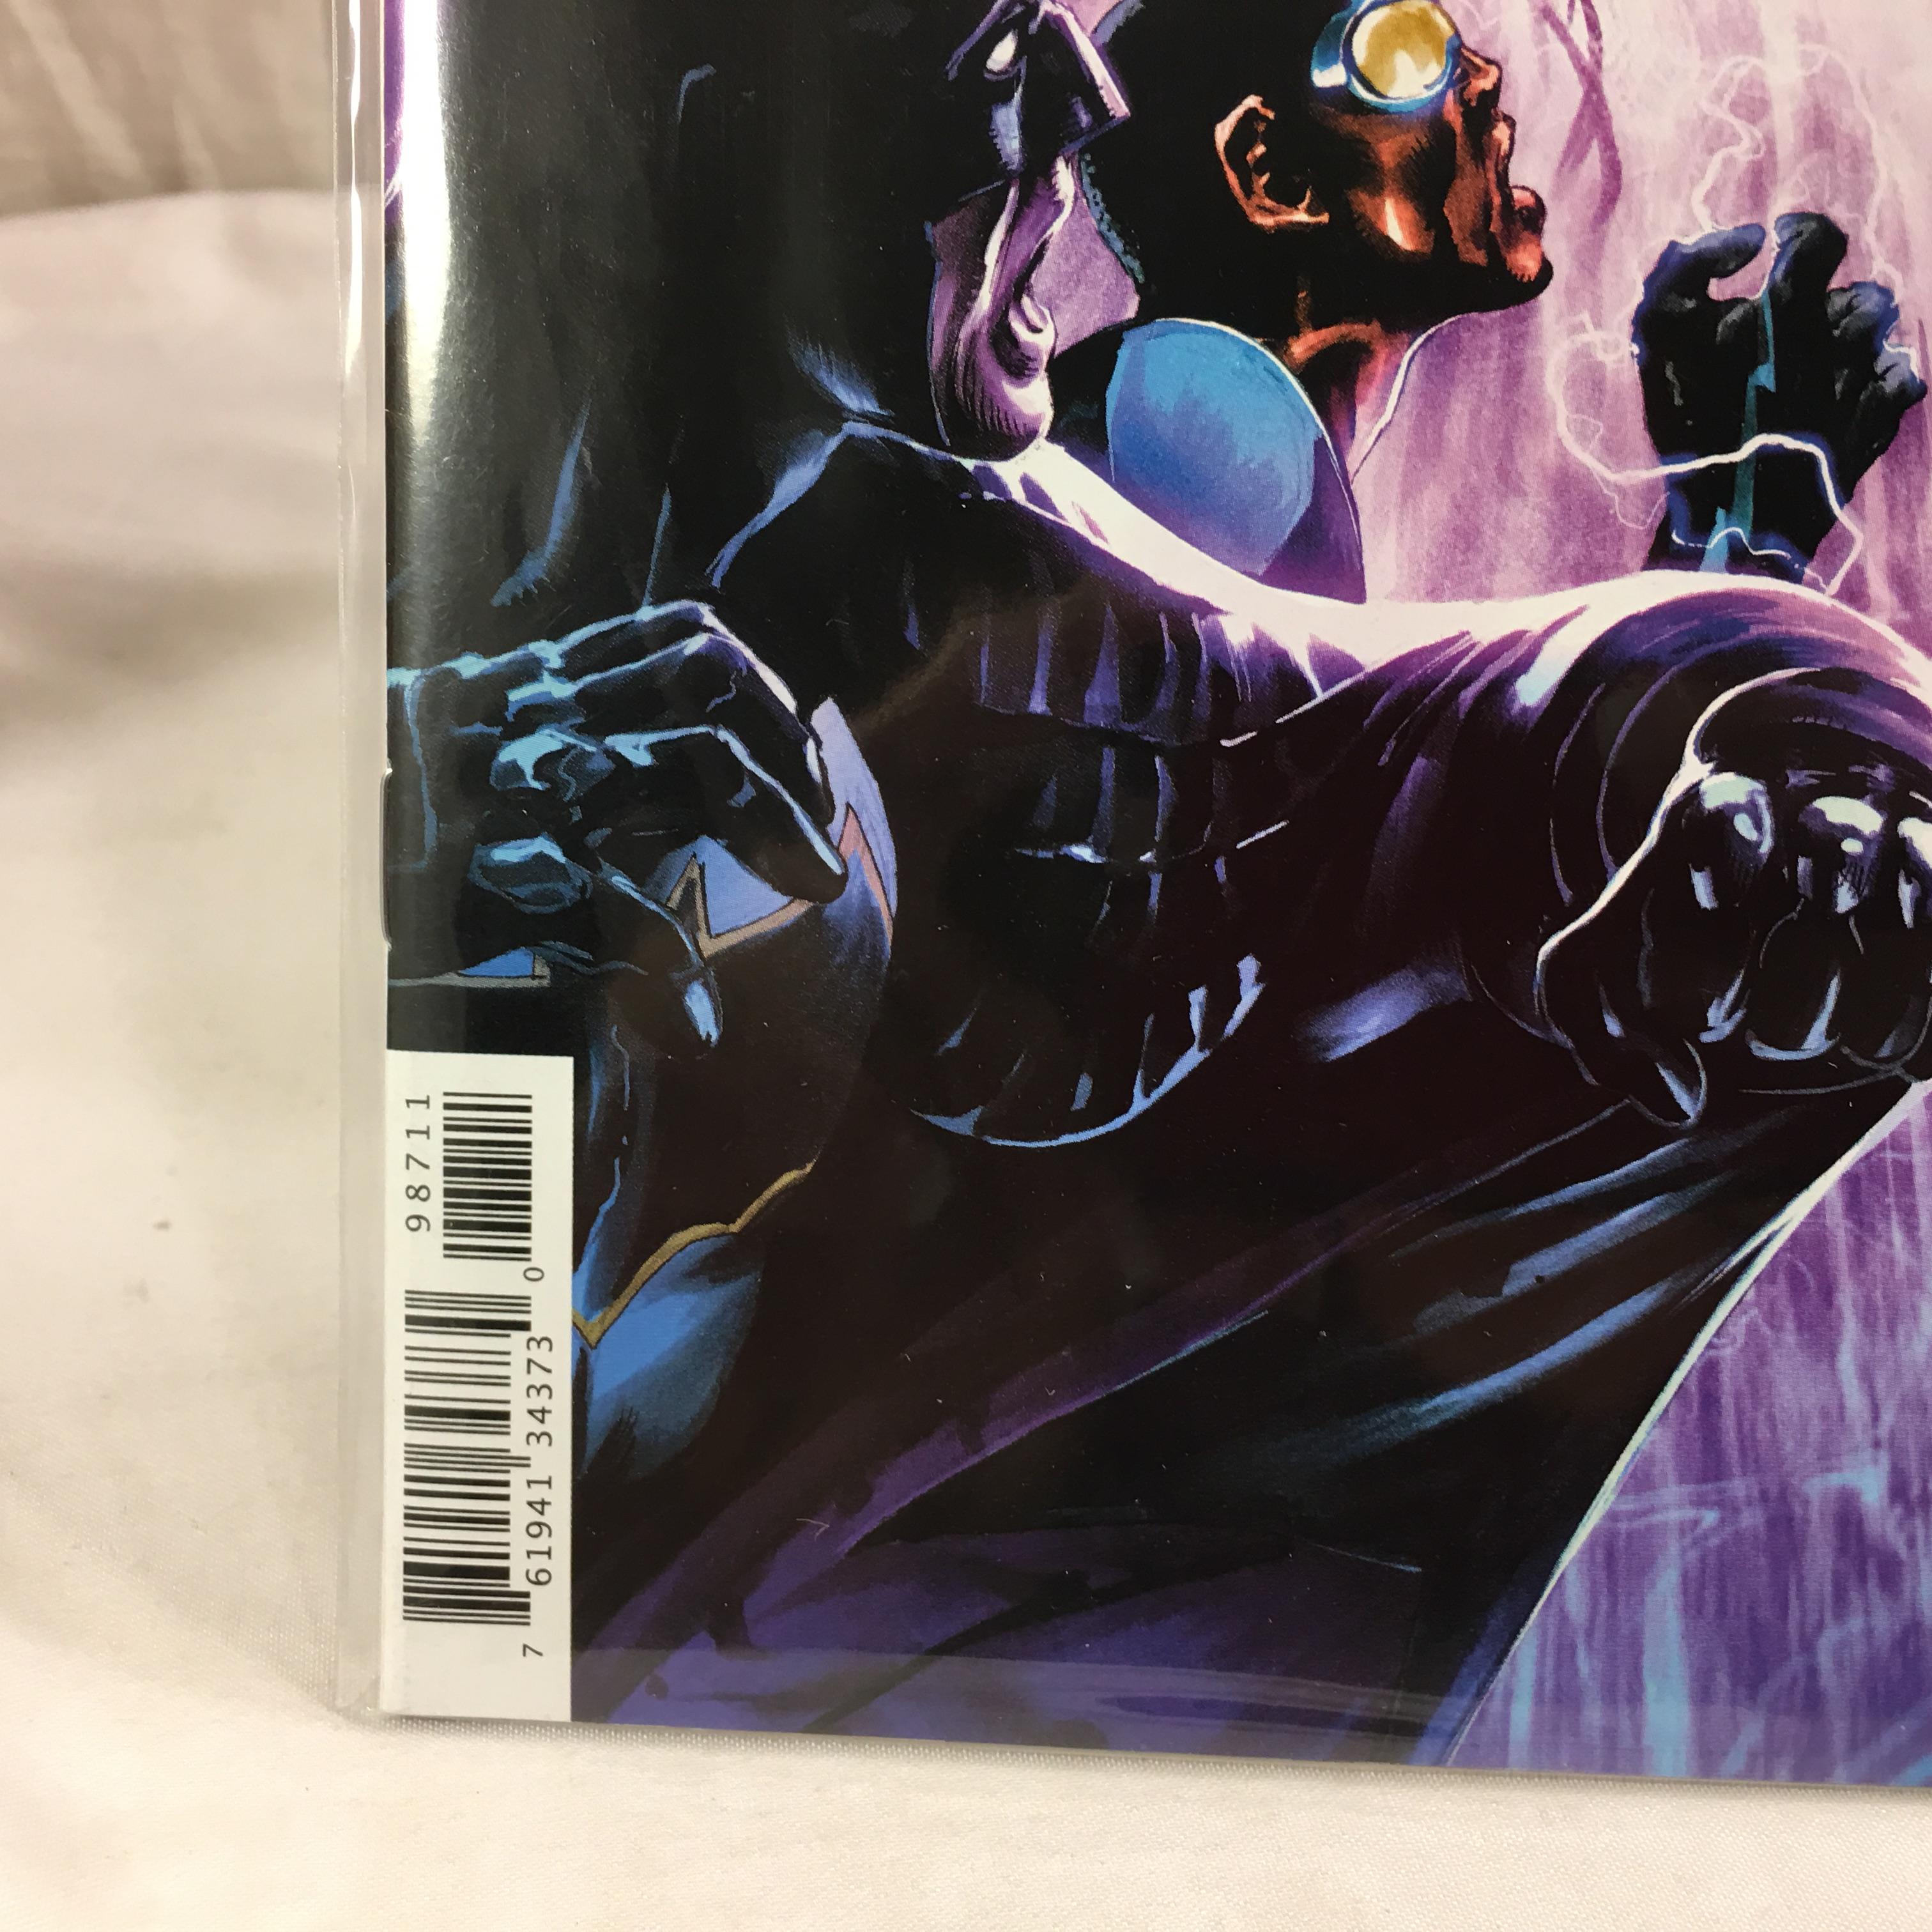 Collector DC, Comics Universe Batman Detective Comics #987  Comic Book